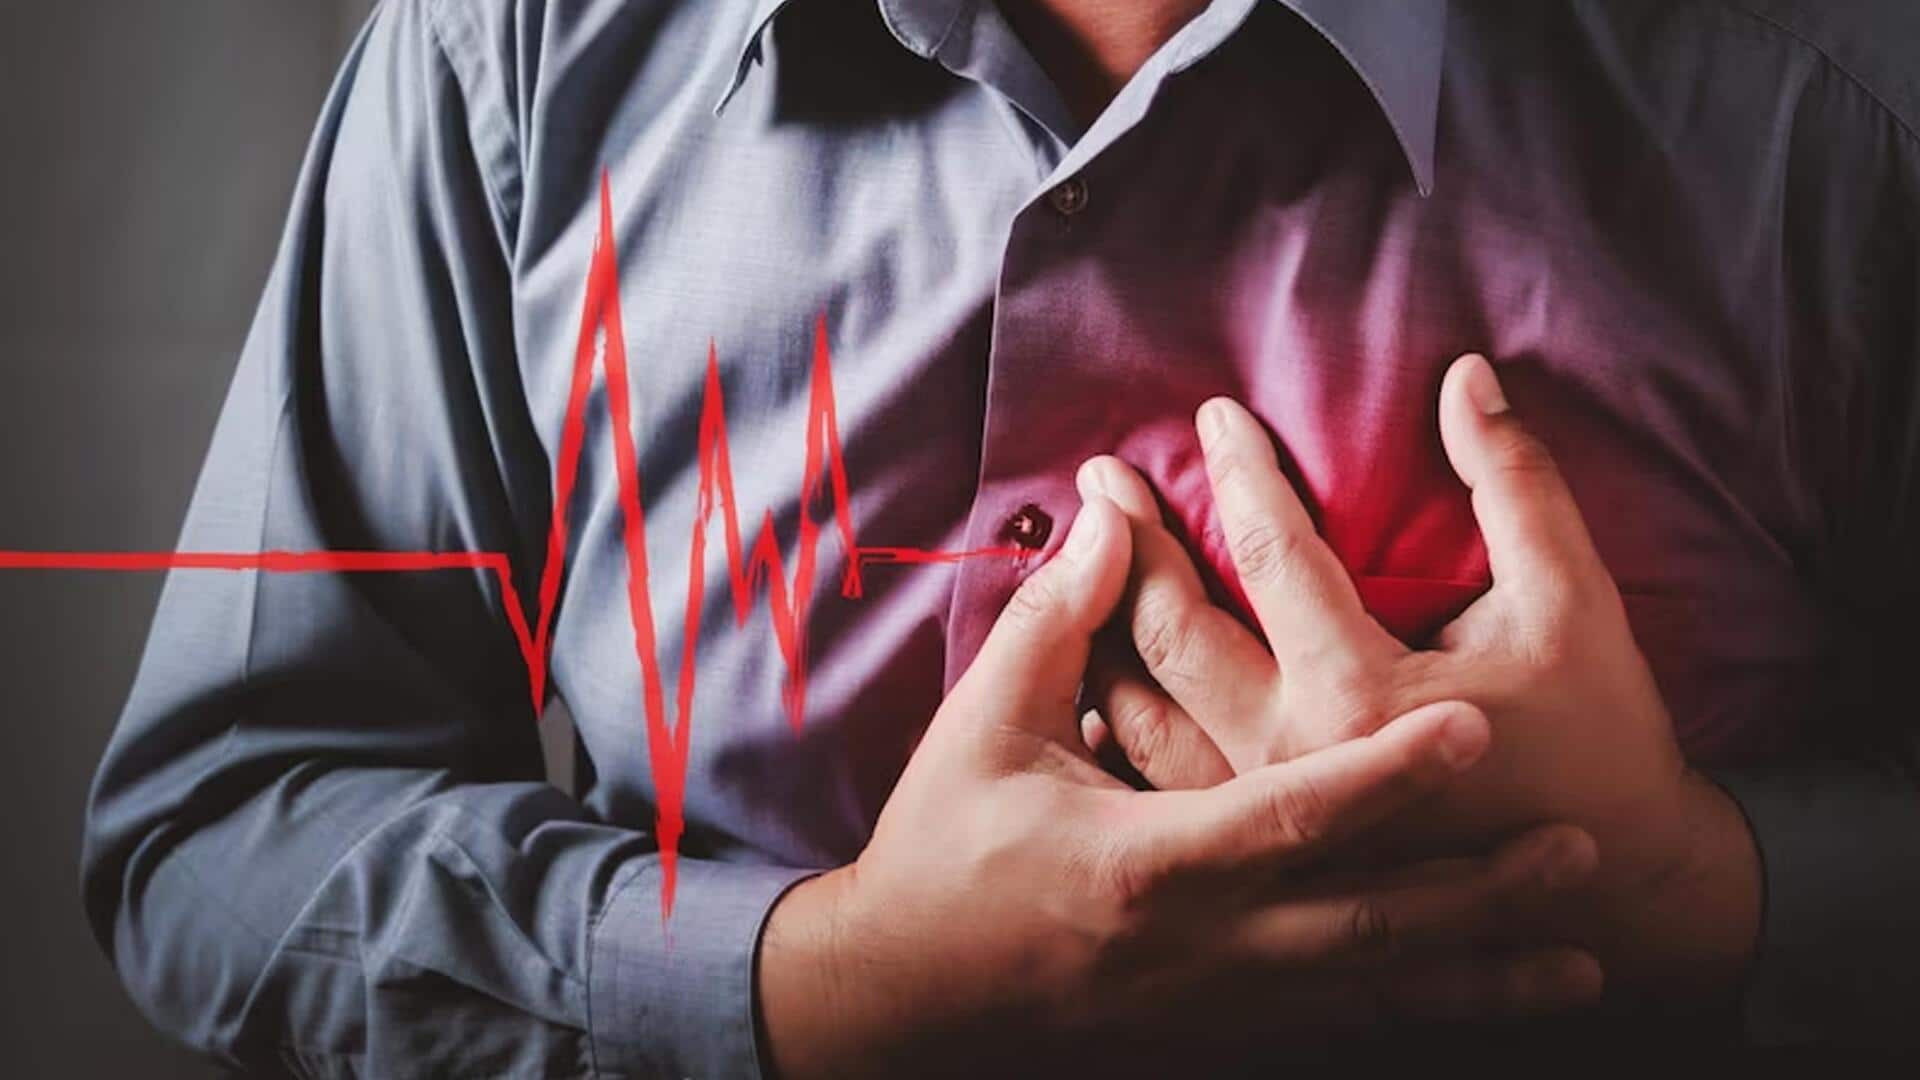 इंटरमिटेंट फास्टिंग से लगभग 91 प्रतिशत बढ़ जाता है हृदय रोग से मौत का खतरा- अध्ययन